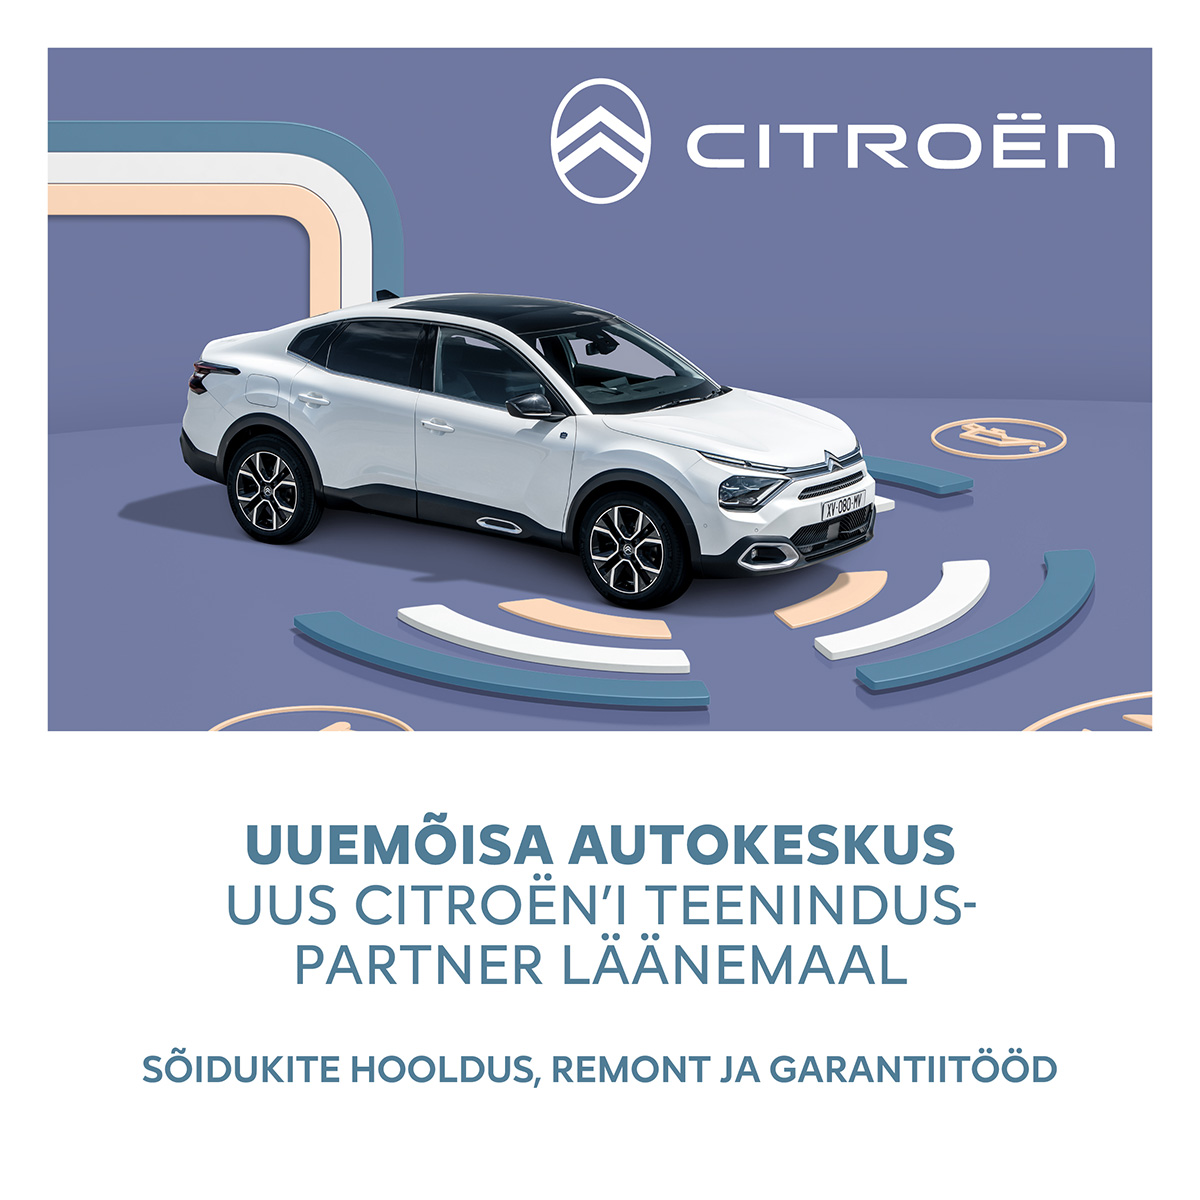 Citroëni remont, hooldus ja garantiitööd - Uuemõisa Autokeskus.
